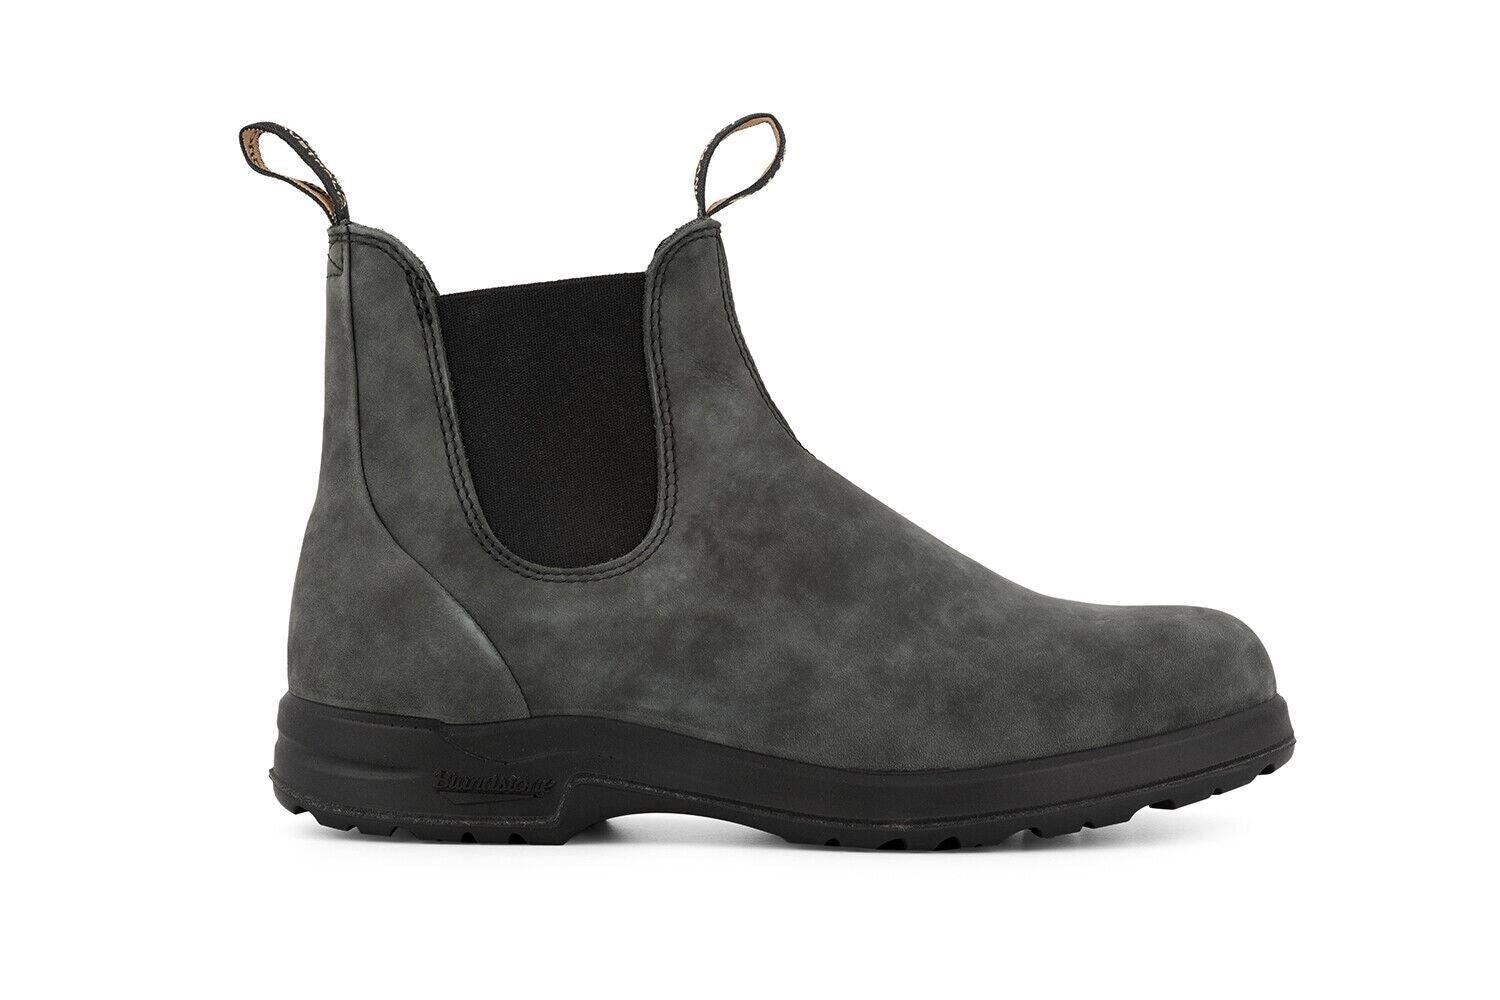 Ботинки Blundstone #2055 Chelsea Terrain, черный кожаные ботинки челси 566 blundstone черный